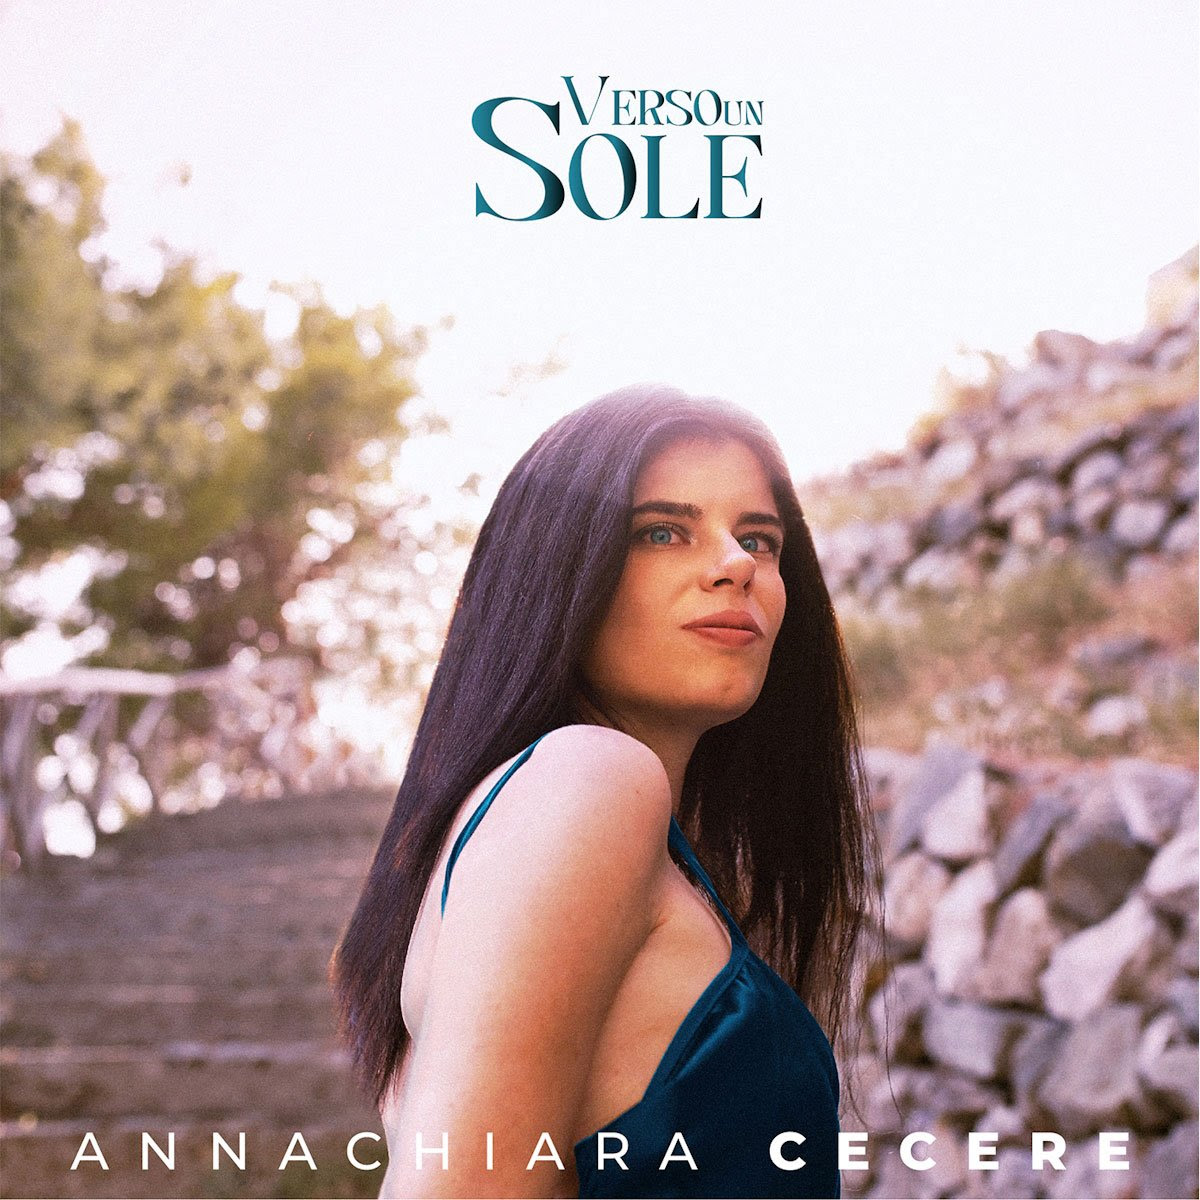 ANNACHIARA CECERE: dal 19 aprile in radio e sui digital store “VERSO UN SOLE” il nuovo singolo